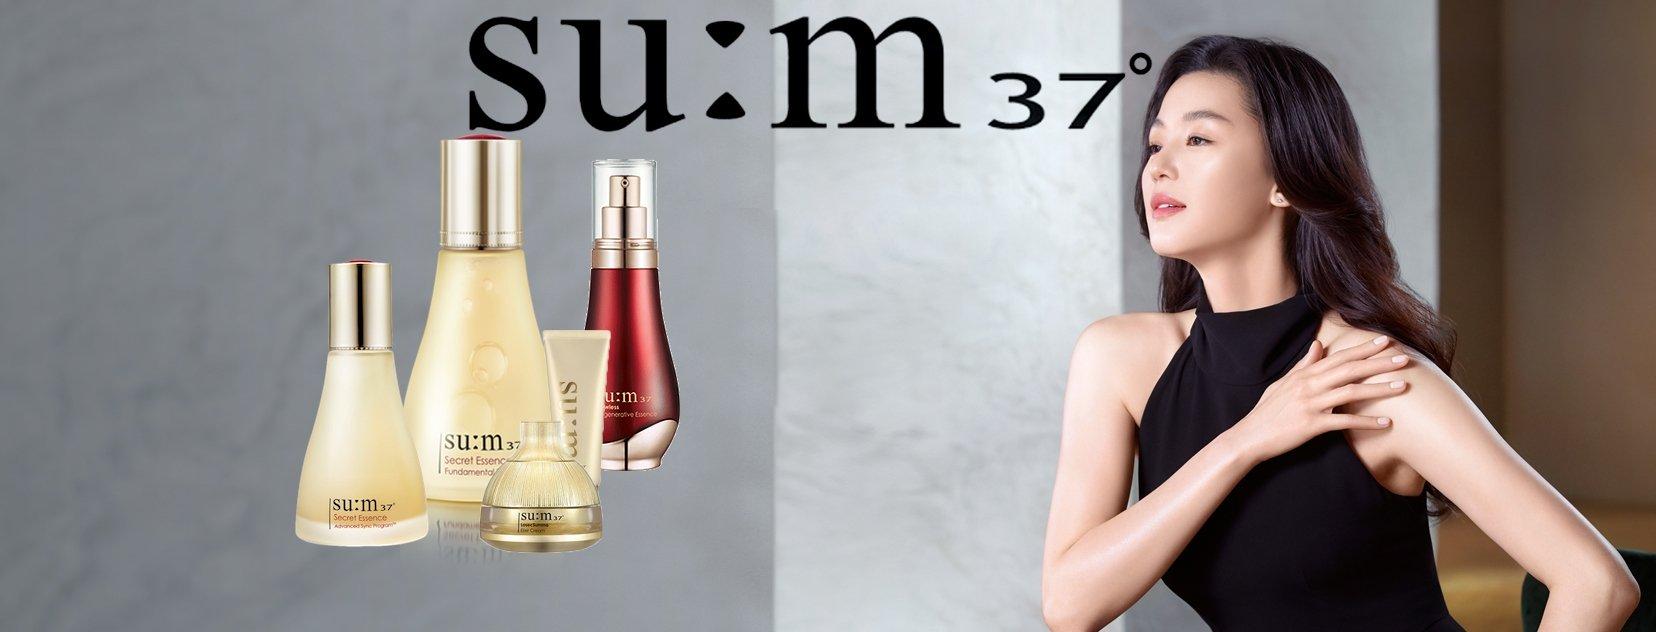 Thương hiệu mỹ phẩm Su:m37: Mỹ phẩm lên men tự nhiên cao cấp Hàn Quốc - BlogAnChoi